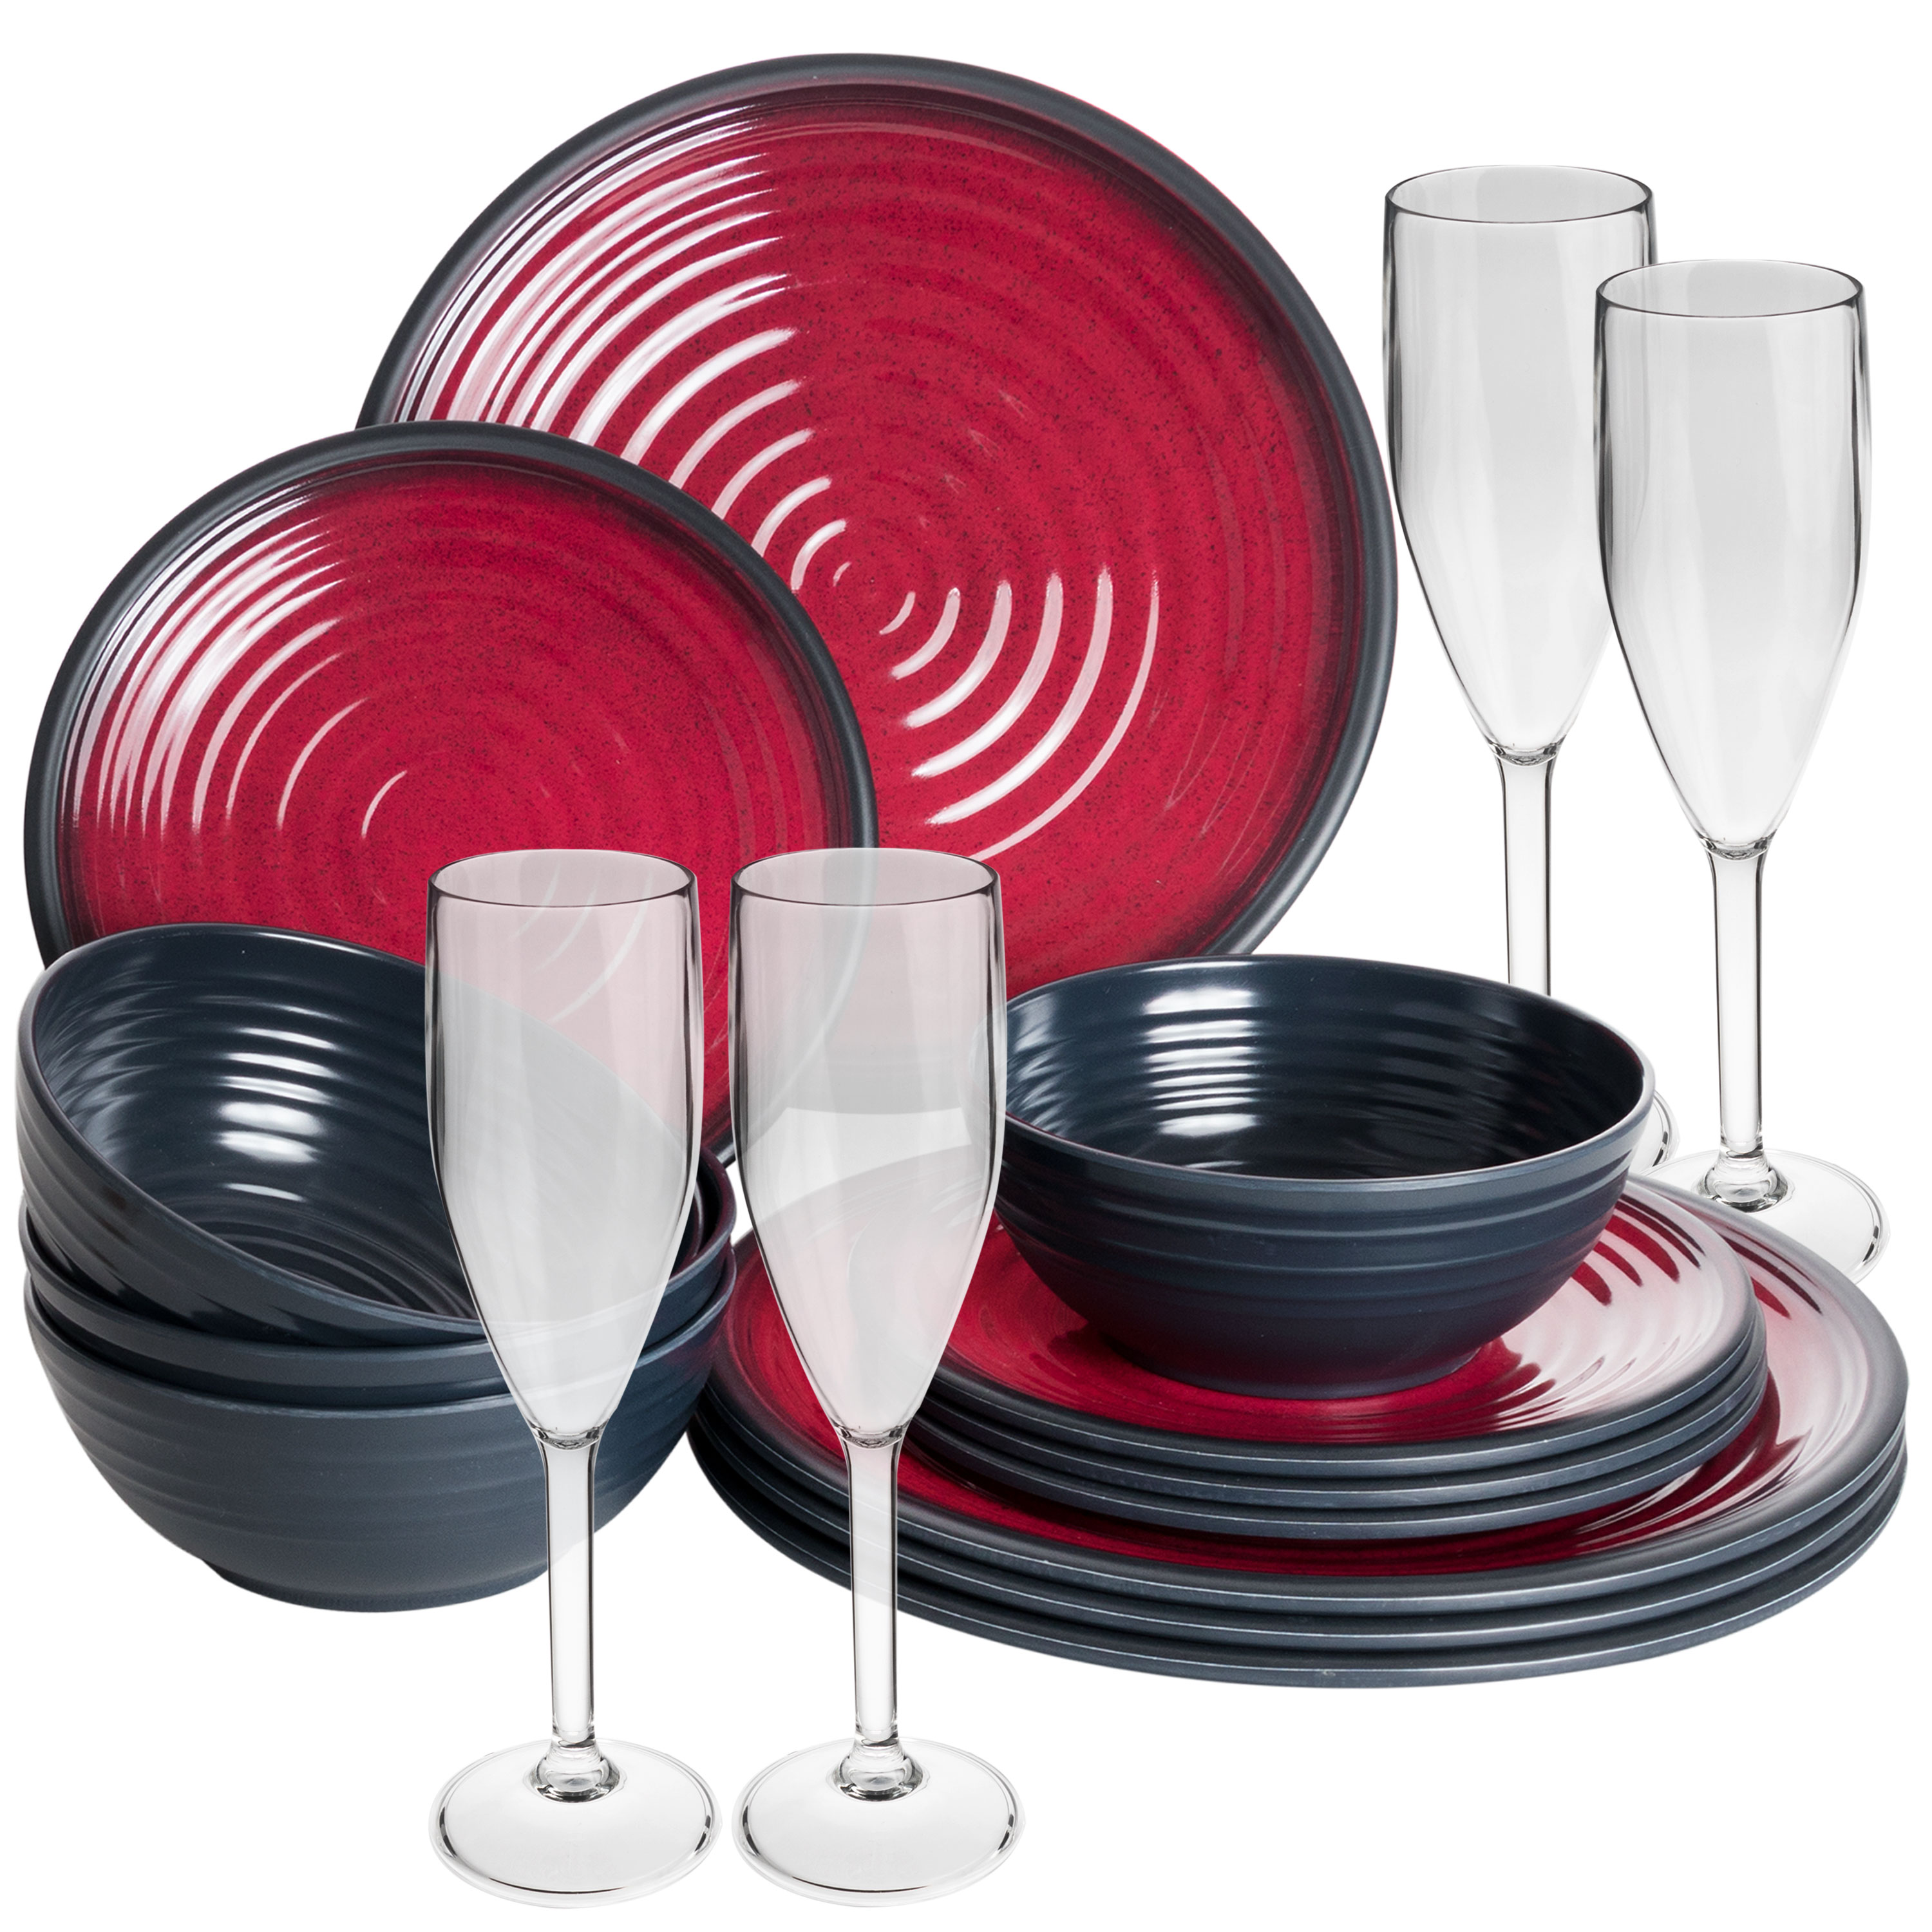 Melamin Camping Geschirr | Gläsern mit eBay Set Tassen Essgeschirr rot oder schwarz